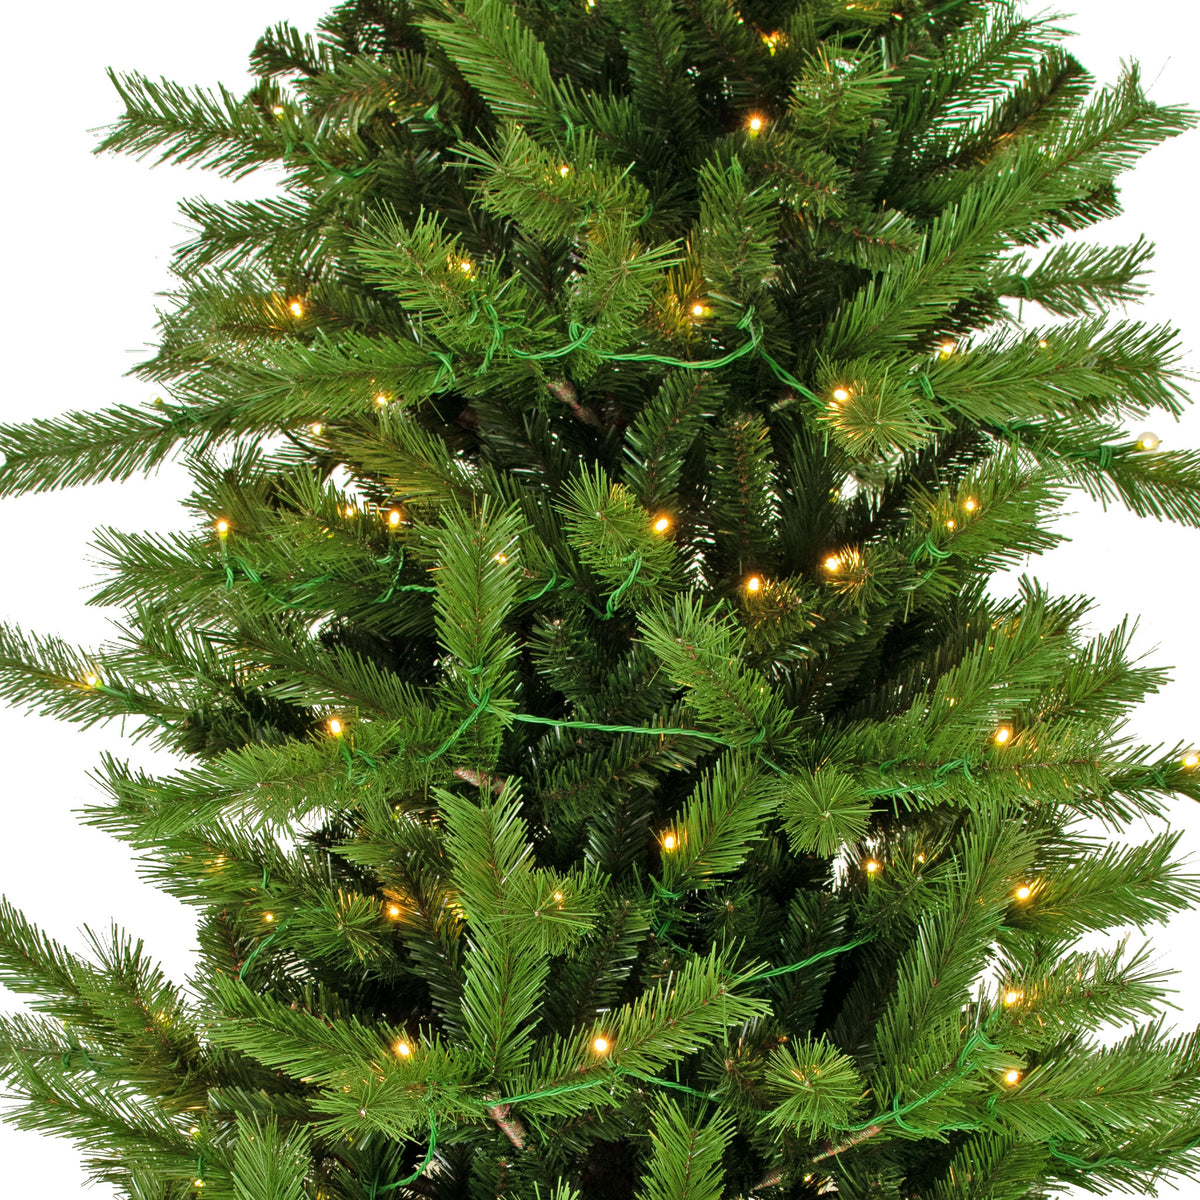 Luxe Christmas Pre-Lit Balsam Fir Tree